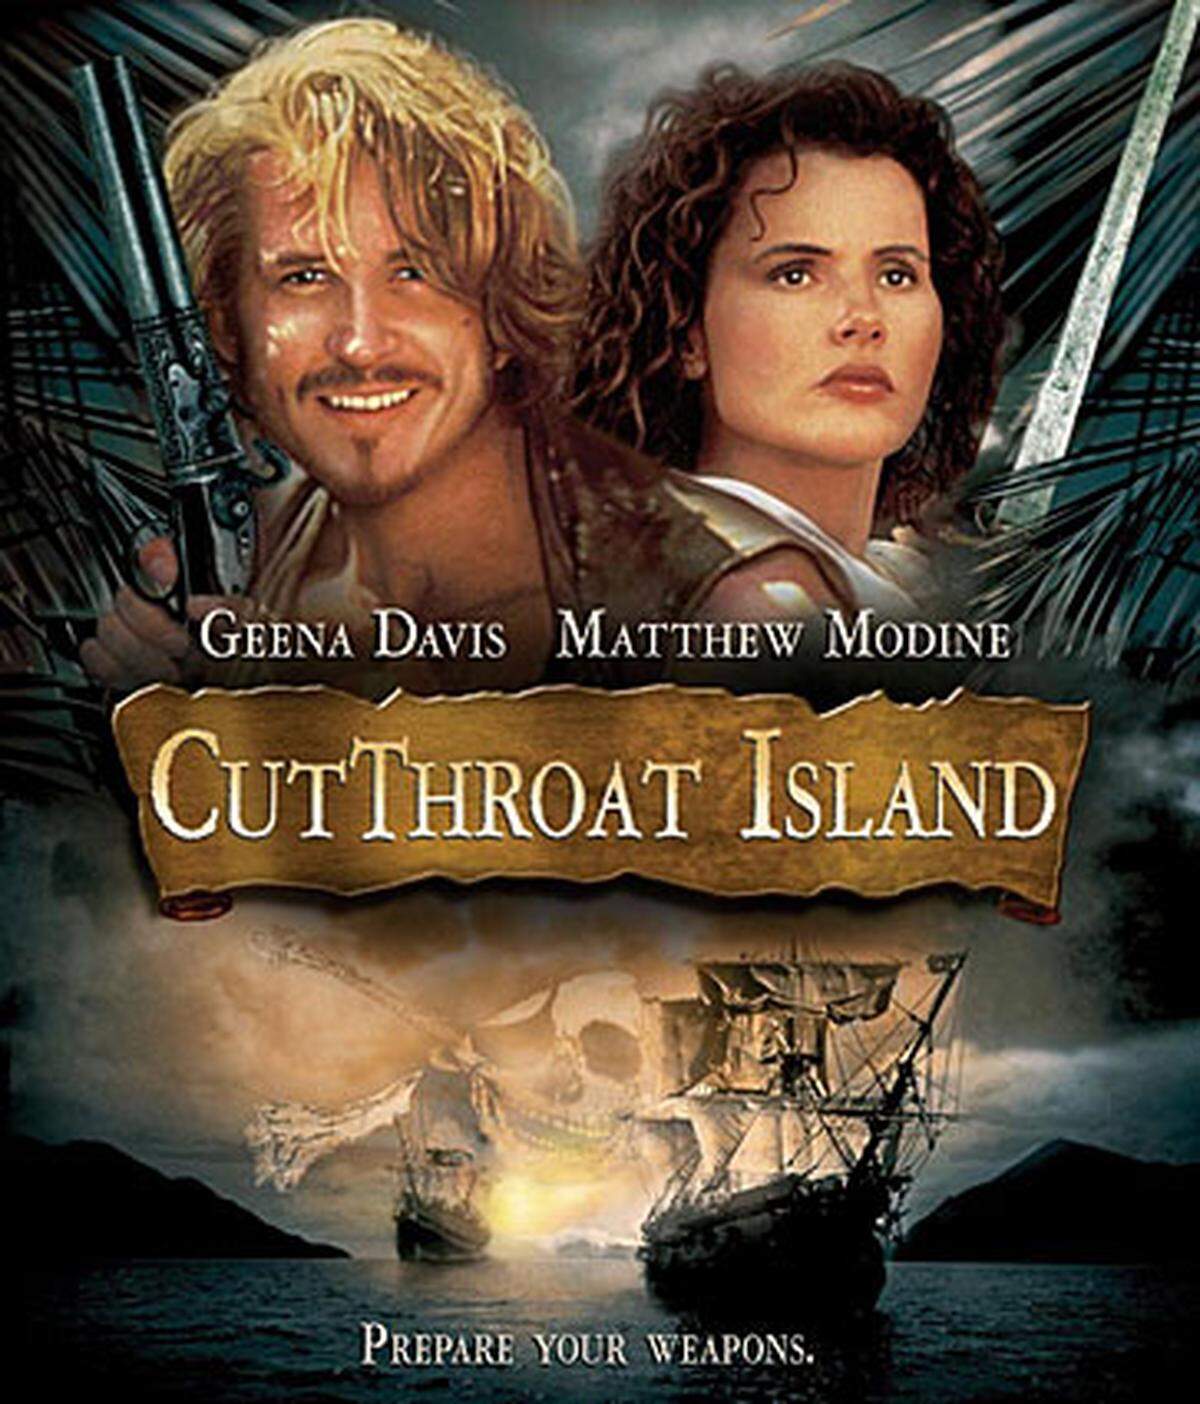 ... "Die Piratenbraut". Der Film von 1995 mit Geena Davis und Matthew Modine in den Hauptrollen spielte an den Kinokassen weltweit etwa 10 Millionen Dollar ein. Produktion und Vermarktung des Streifens kosteten aber 115 Millionen Dollar. Der Originaltitel "Cutthroat Island" bedeutet übersetzt übrigens "Insel der Halsabschneider". Er gilt als bisher größter Flop der Filmgeschichte.